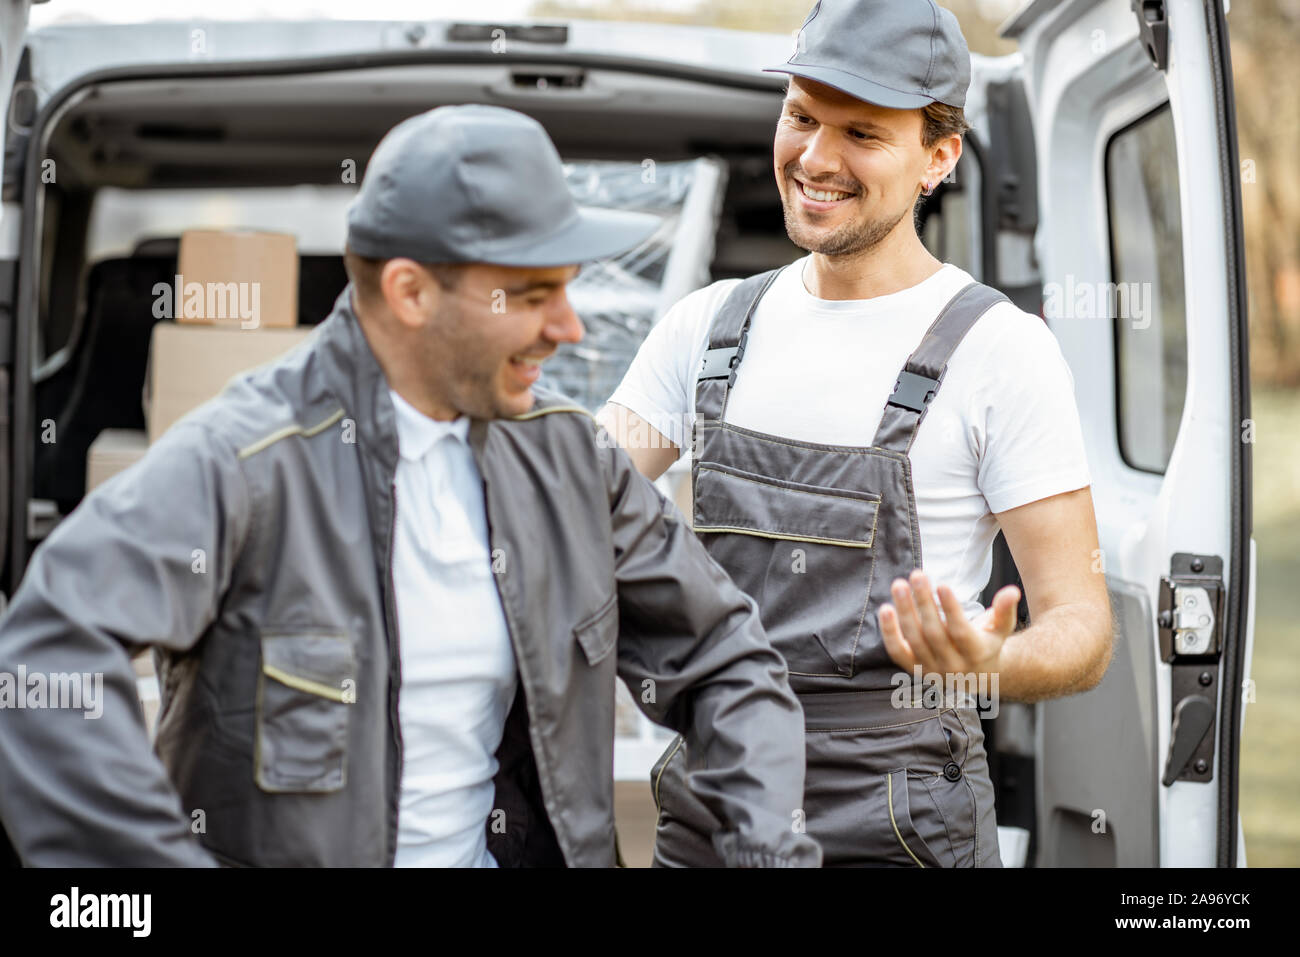 Porträt einer zwei freundliche Lieferung Männer oder movers in  Arbeitskleidung in der Nähe von einer Ladung Fahrzeug Kofferraum voller  Boxen zu liefern Stockfotografie - Alamy